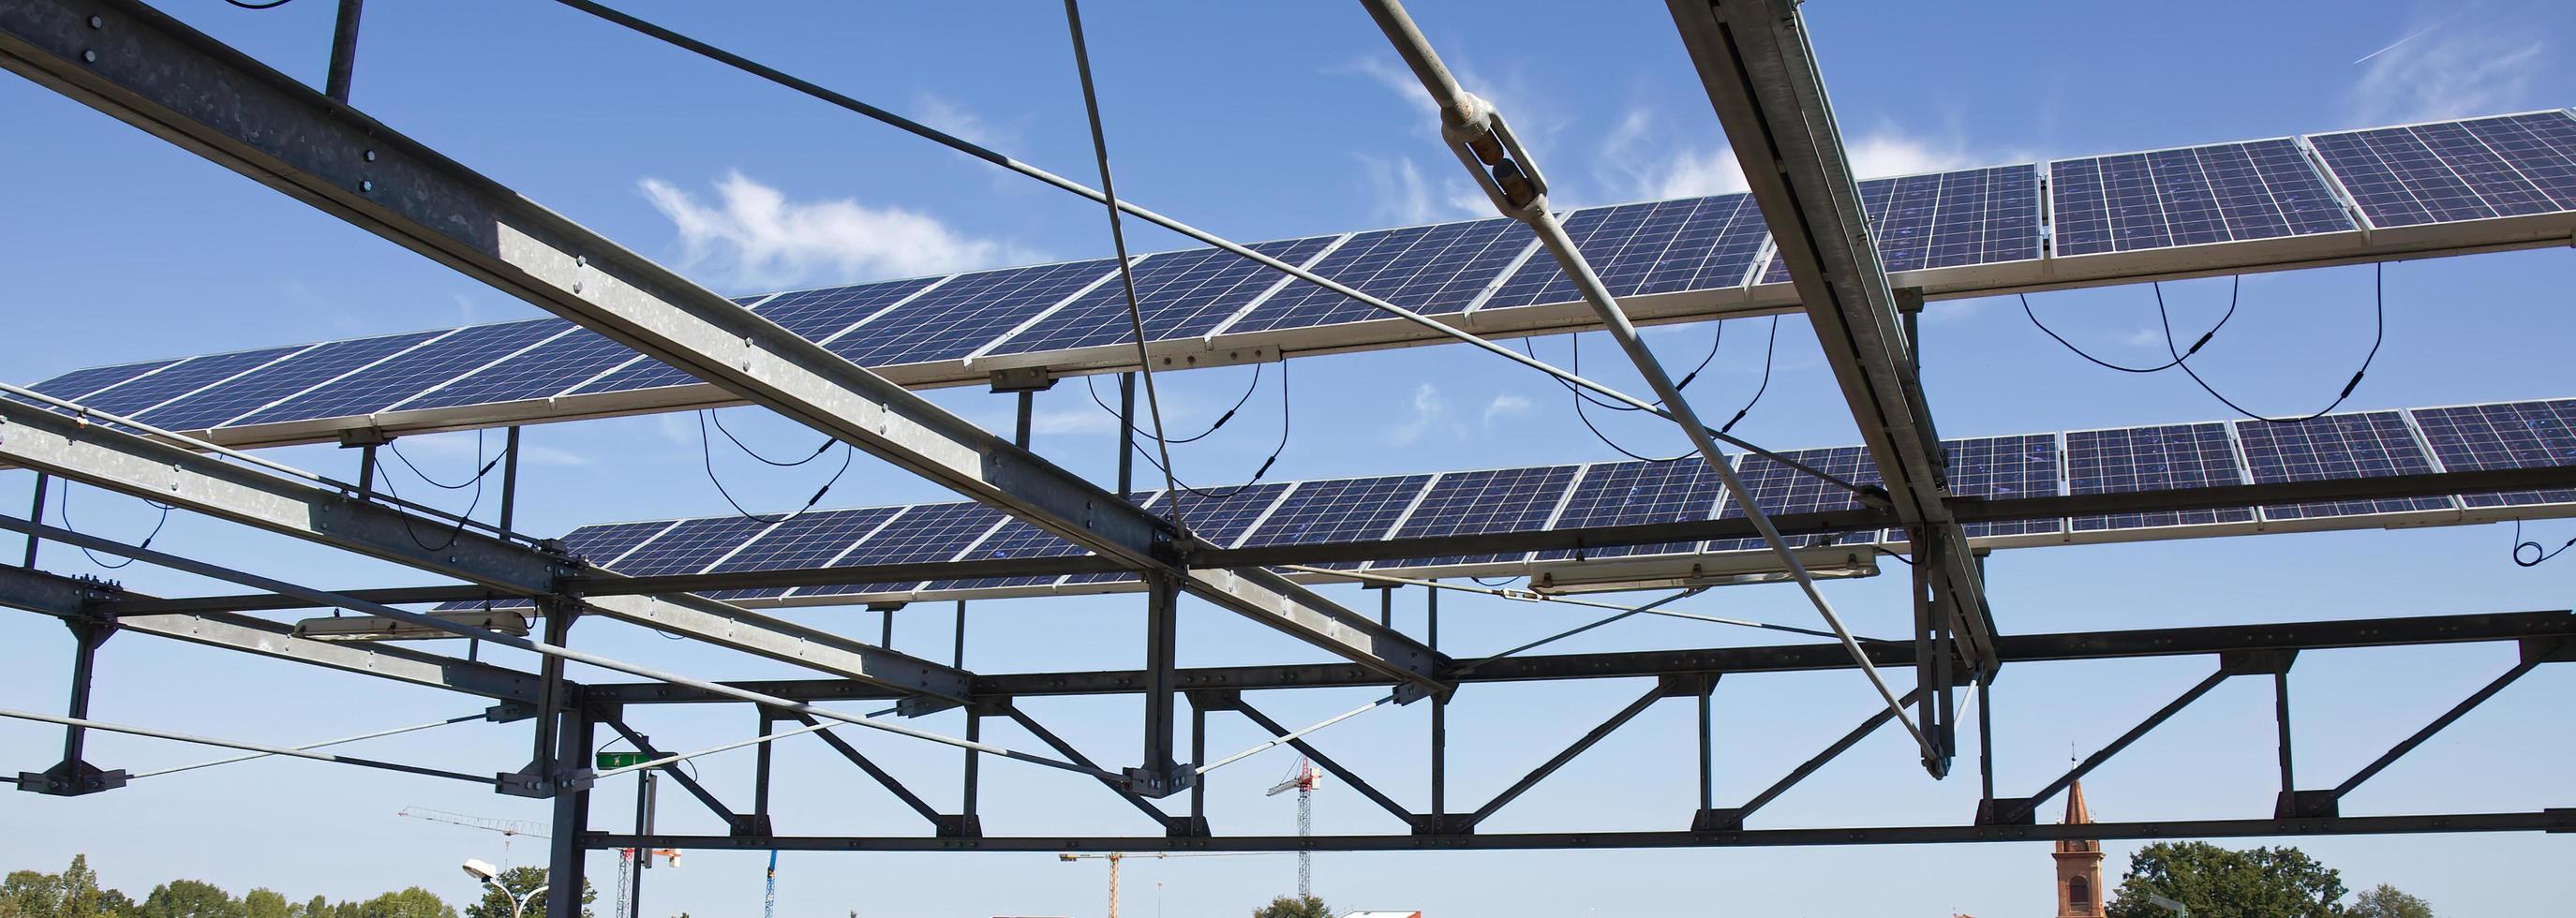 panneaux solaires pour la production d'énergie électrique renouvelable sur les toits. photo